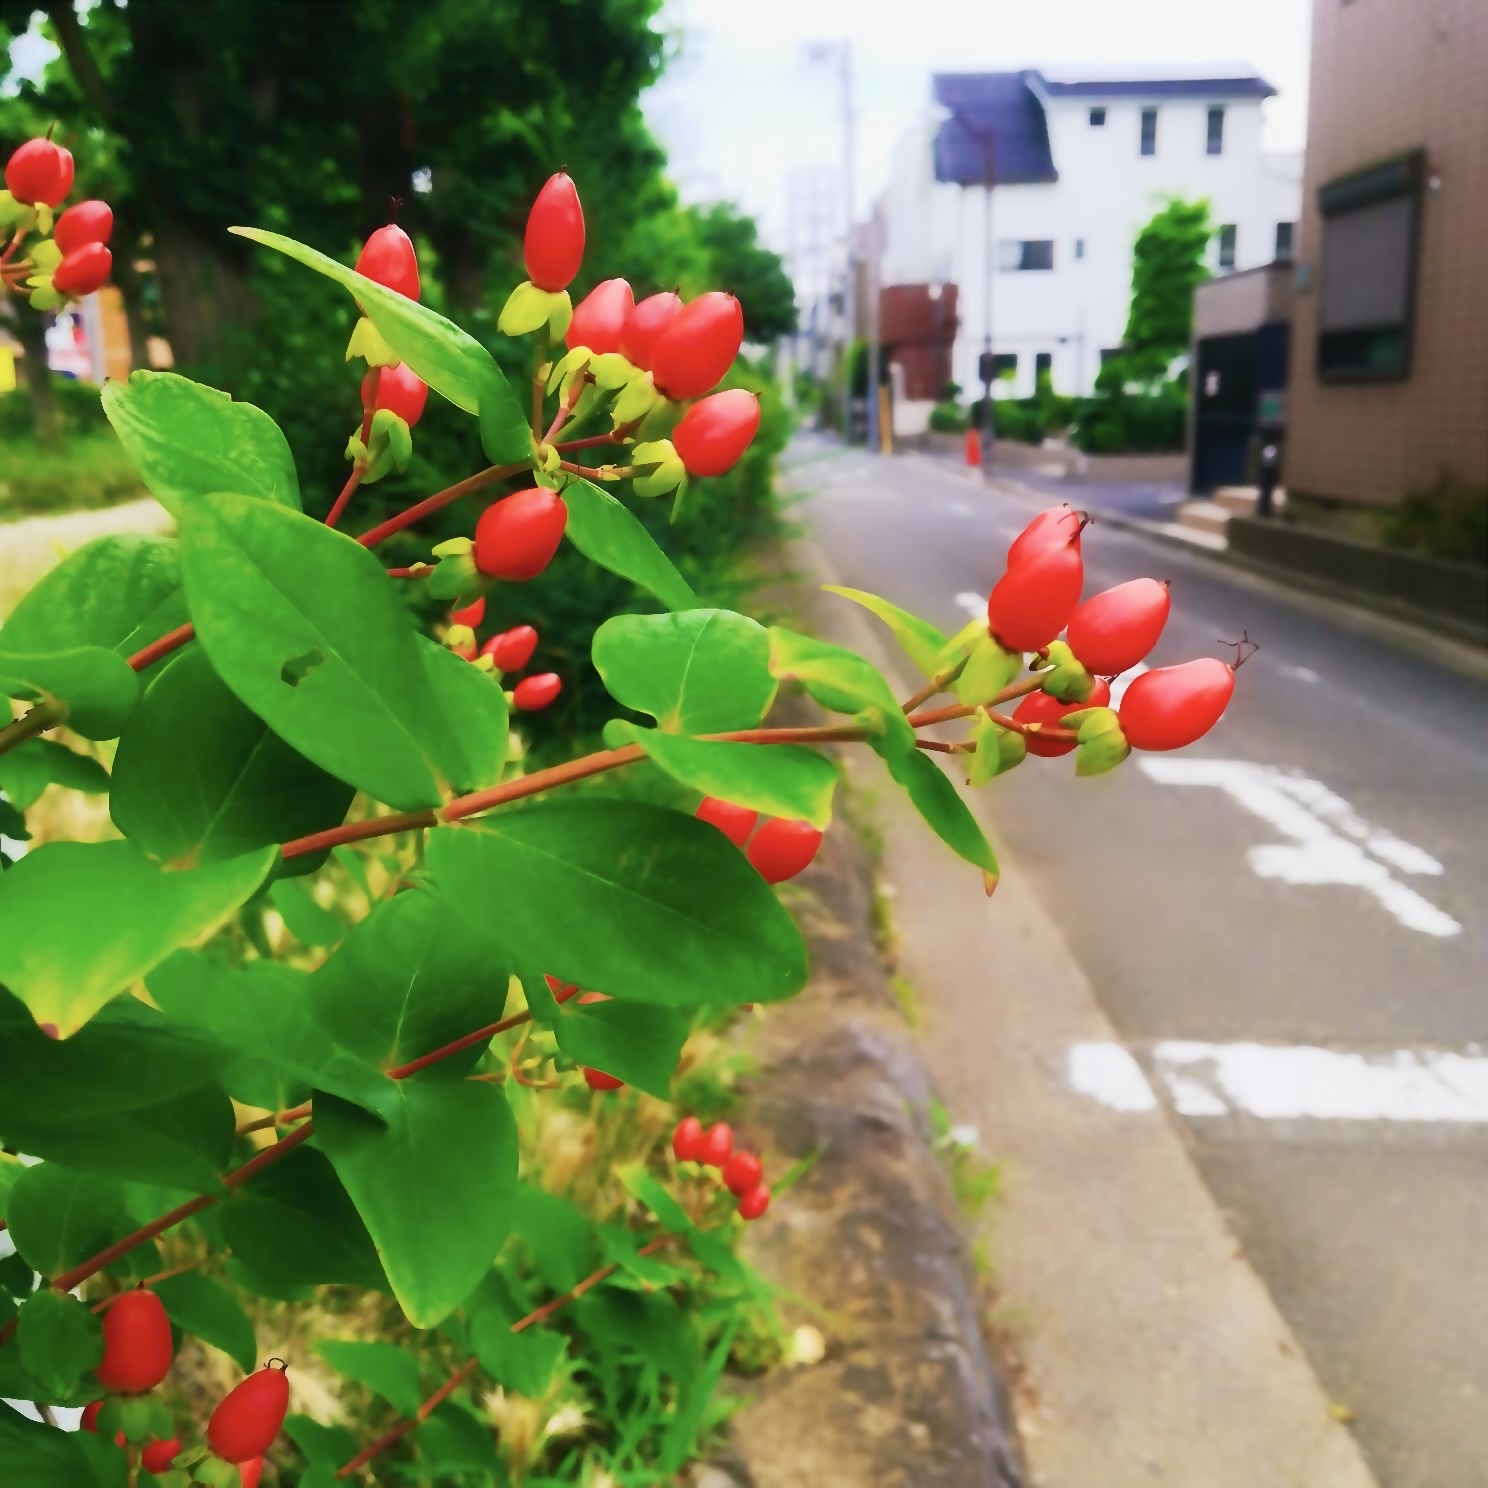 道路脇に生える赤い実のつく植物